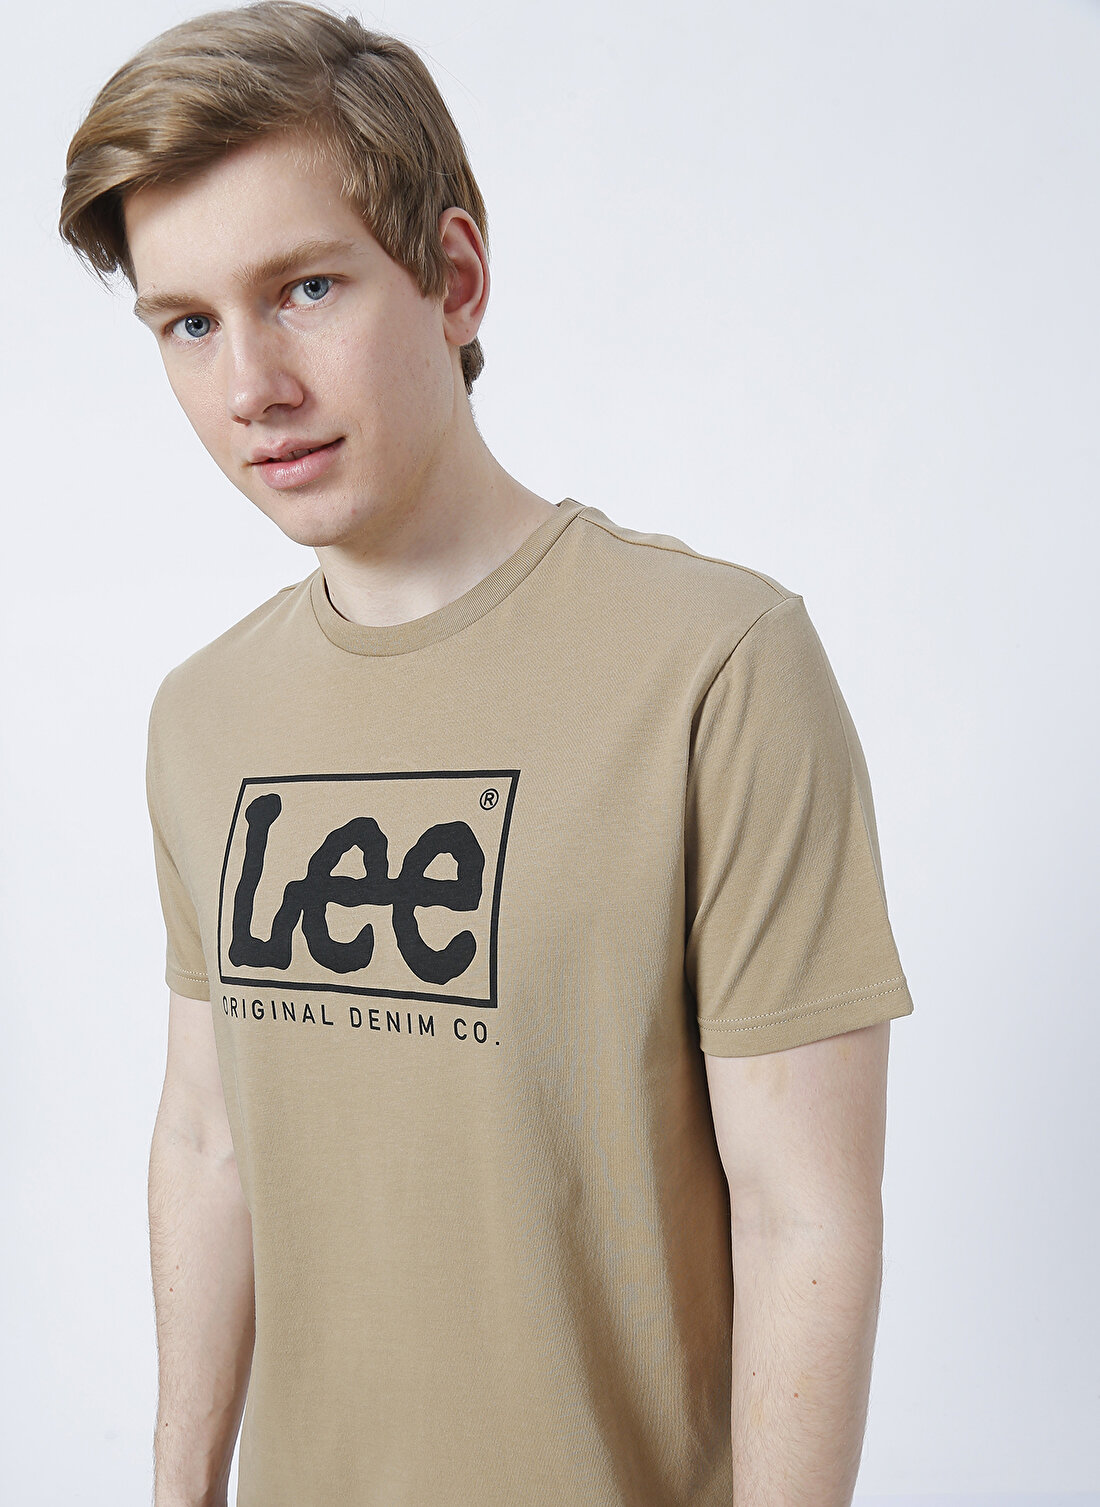 Lee L68Tys56 O Yaka  Regular Fit Baskılı Bej Erkek T-Shirt